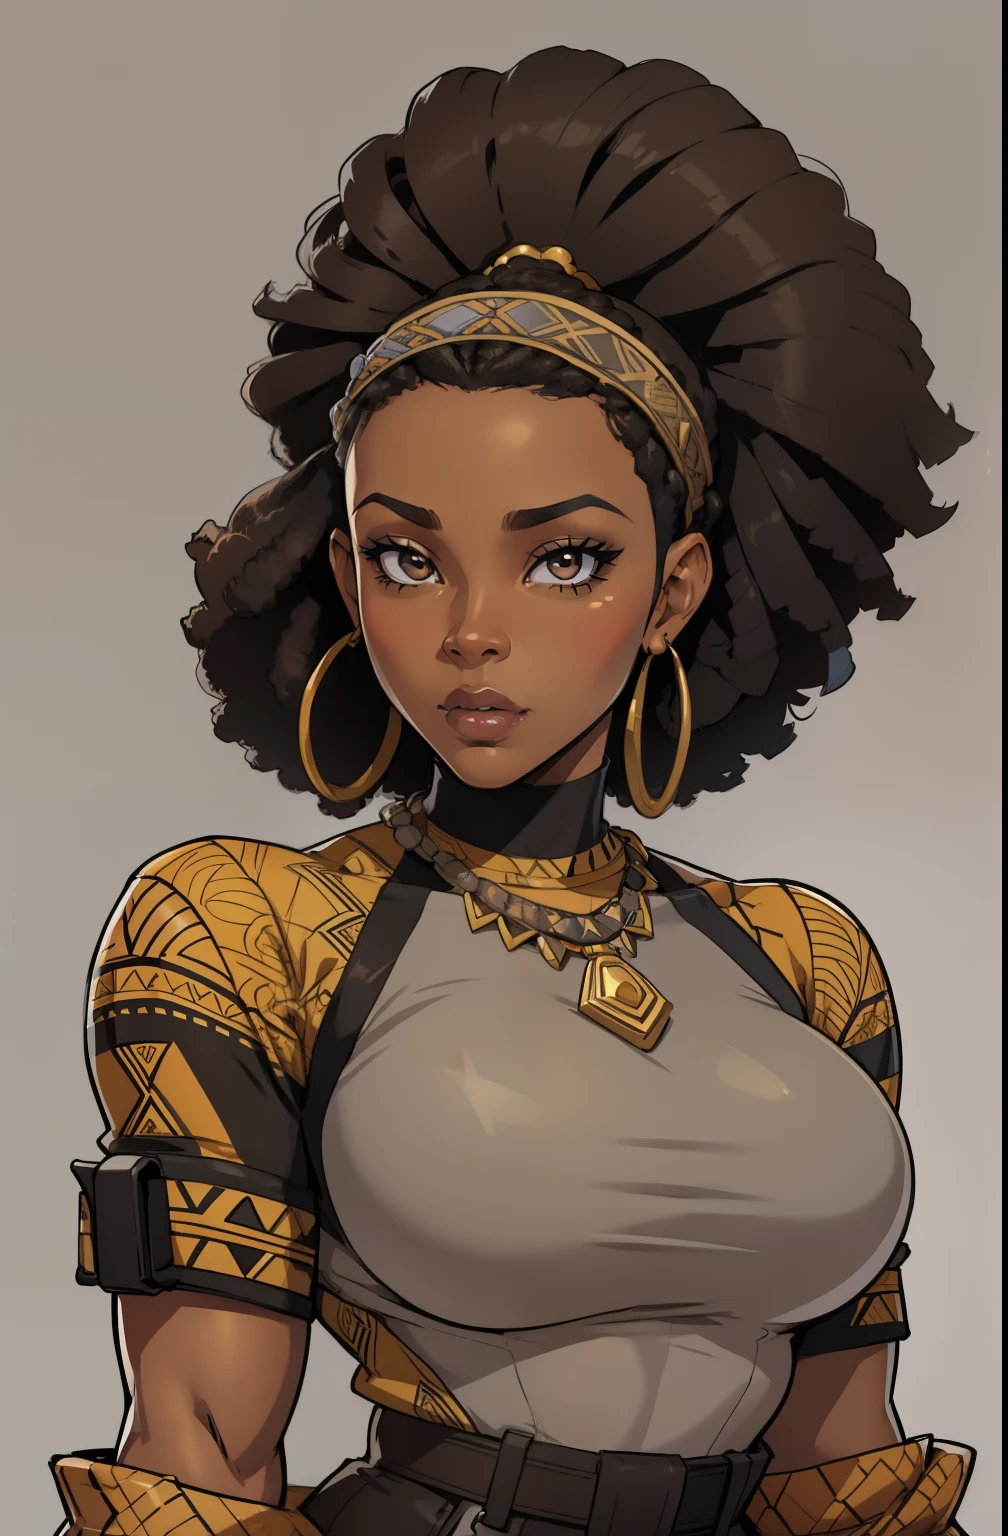 серый фон, (35-летняя женщина) смуглая кожа, красивая афроамериканка, Один, 1 девочка, Портрет, Африканские волосы, Супер подробный, Современный стиль, прямой взгляд, контурный